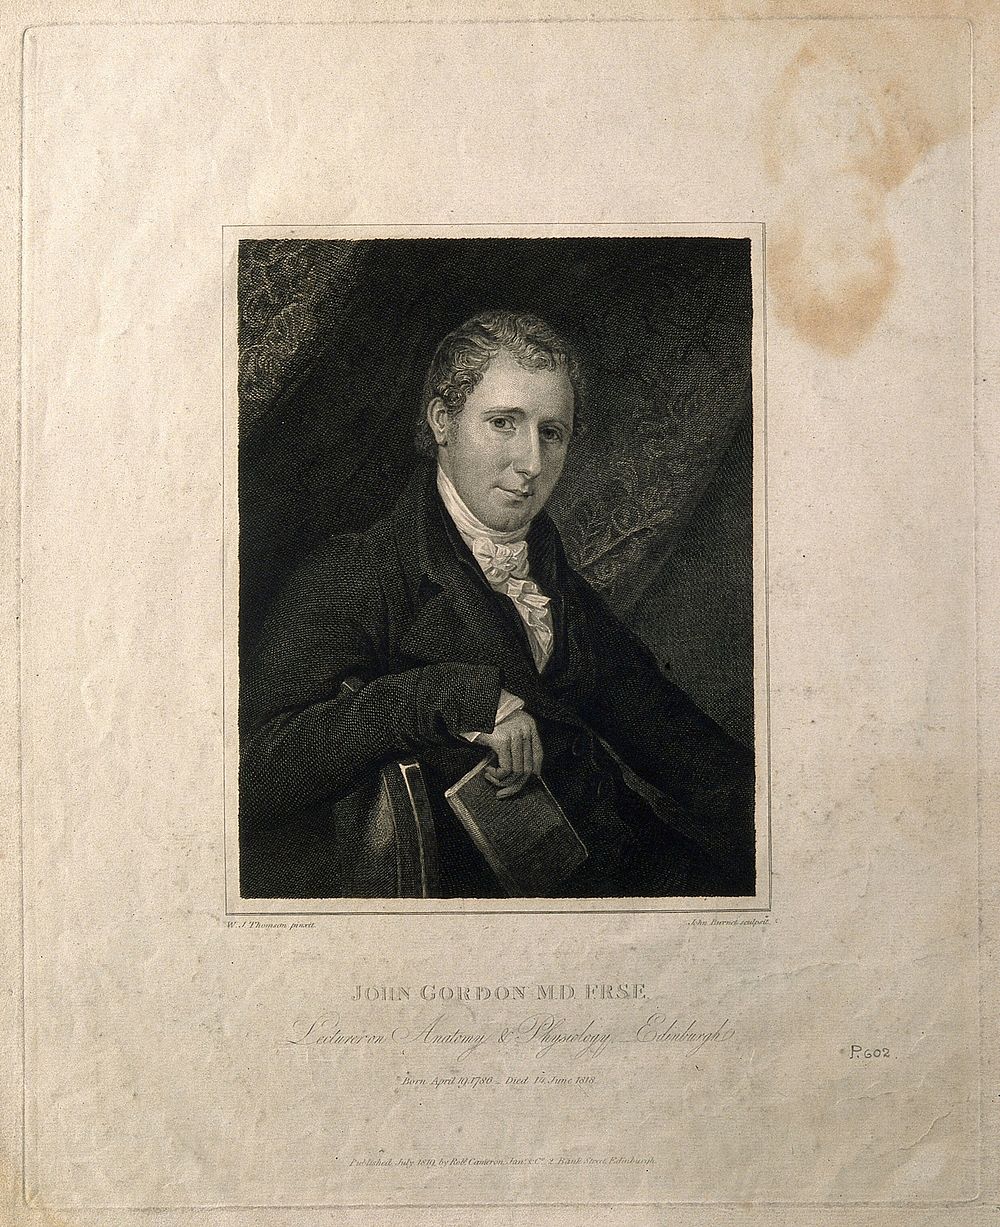 John Gordon. Line engraving by J. Burnet, 1810, after W. J. Thomson.